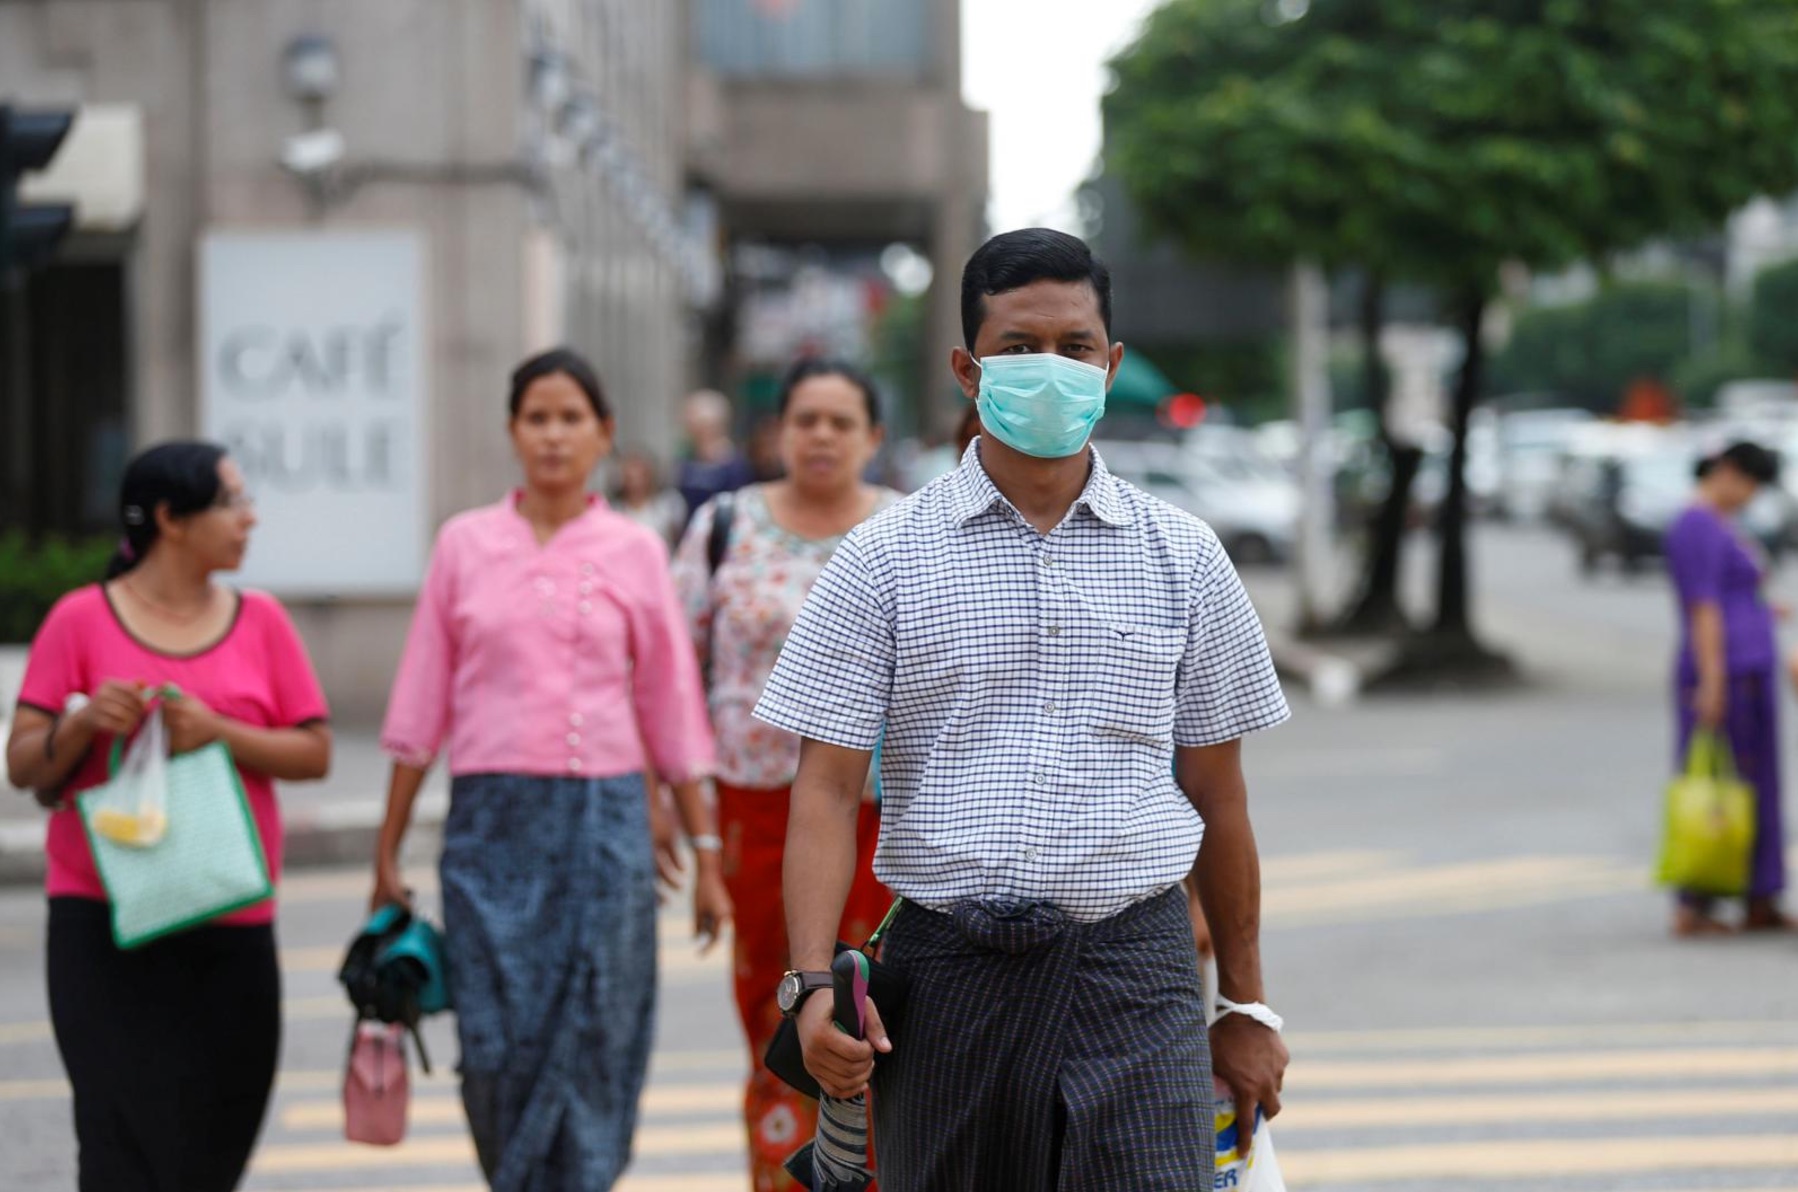 สาธาณสุขพม่าวอนประชาชนอย่าตื่นตระหนก หลังพบผู้ติดเชื้อ H1N1 อย่างน้อย 13 คน และเสียชีวิต 1 คน